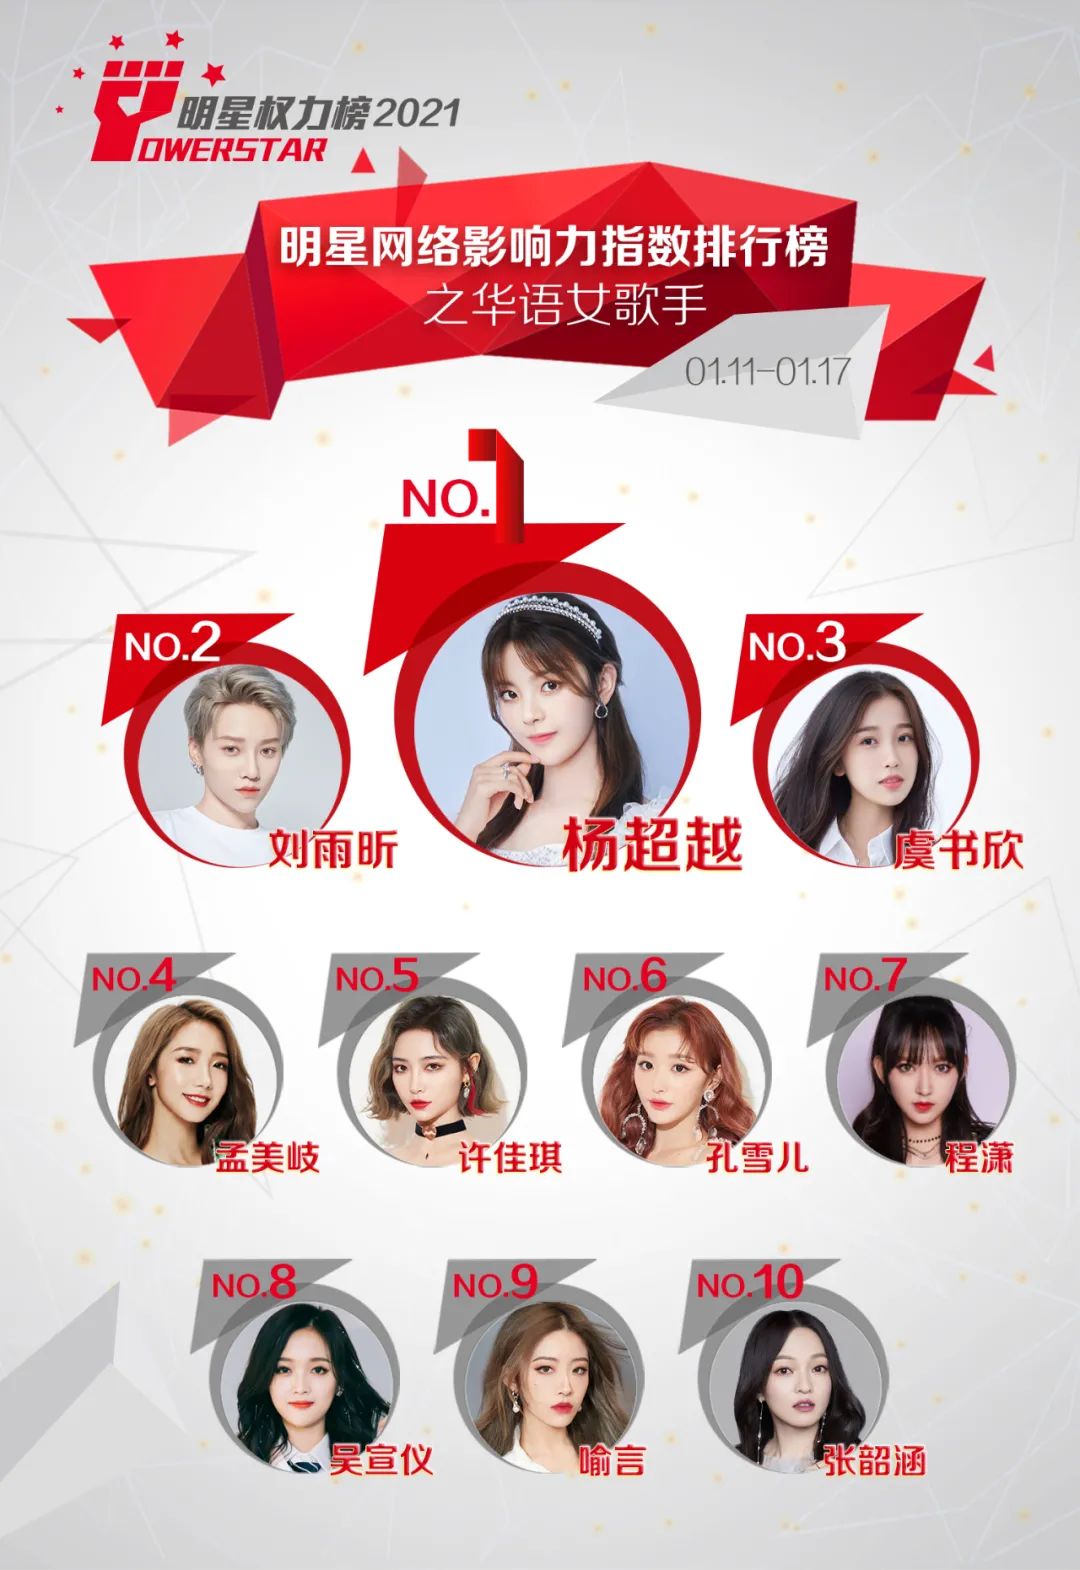 明星网络影响力指数排行榜第278期榜单之华语女歌手Top10